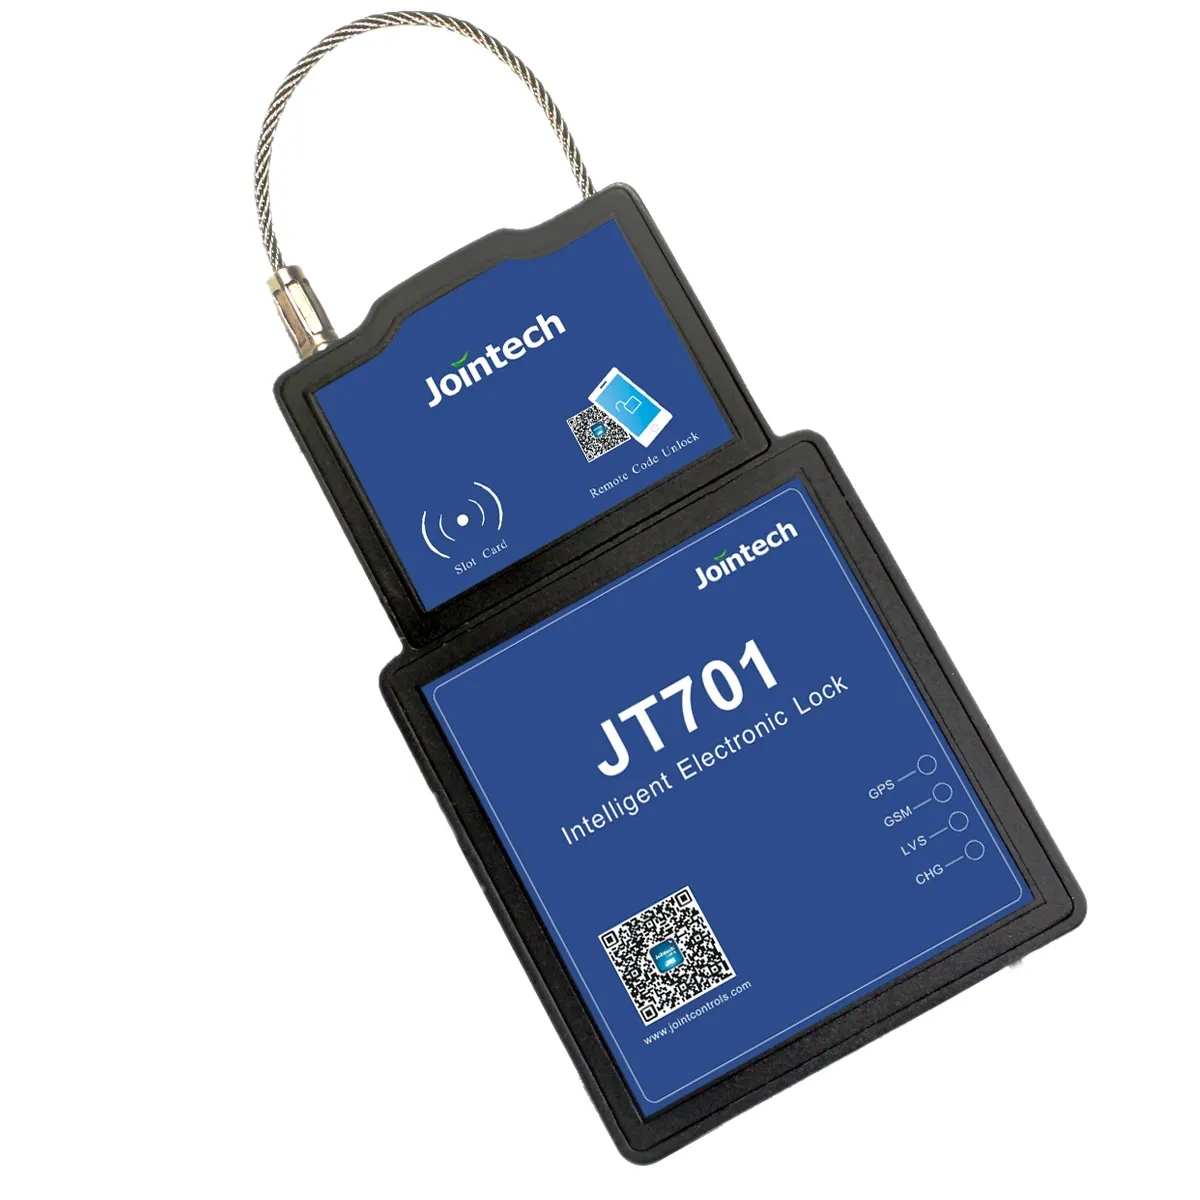 ตัวติดตามทรัพย์สินอัจฉริยะสำหรับการขนส่งสินค้าระบบรักษาความปลอดภัย JT701จาก Jointech RFID